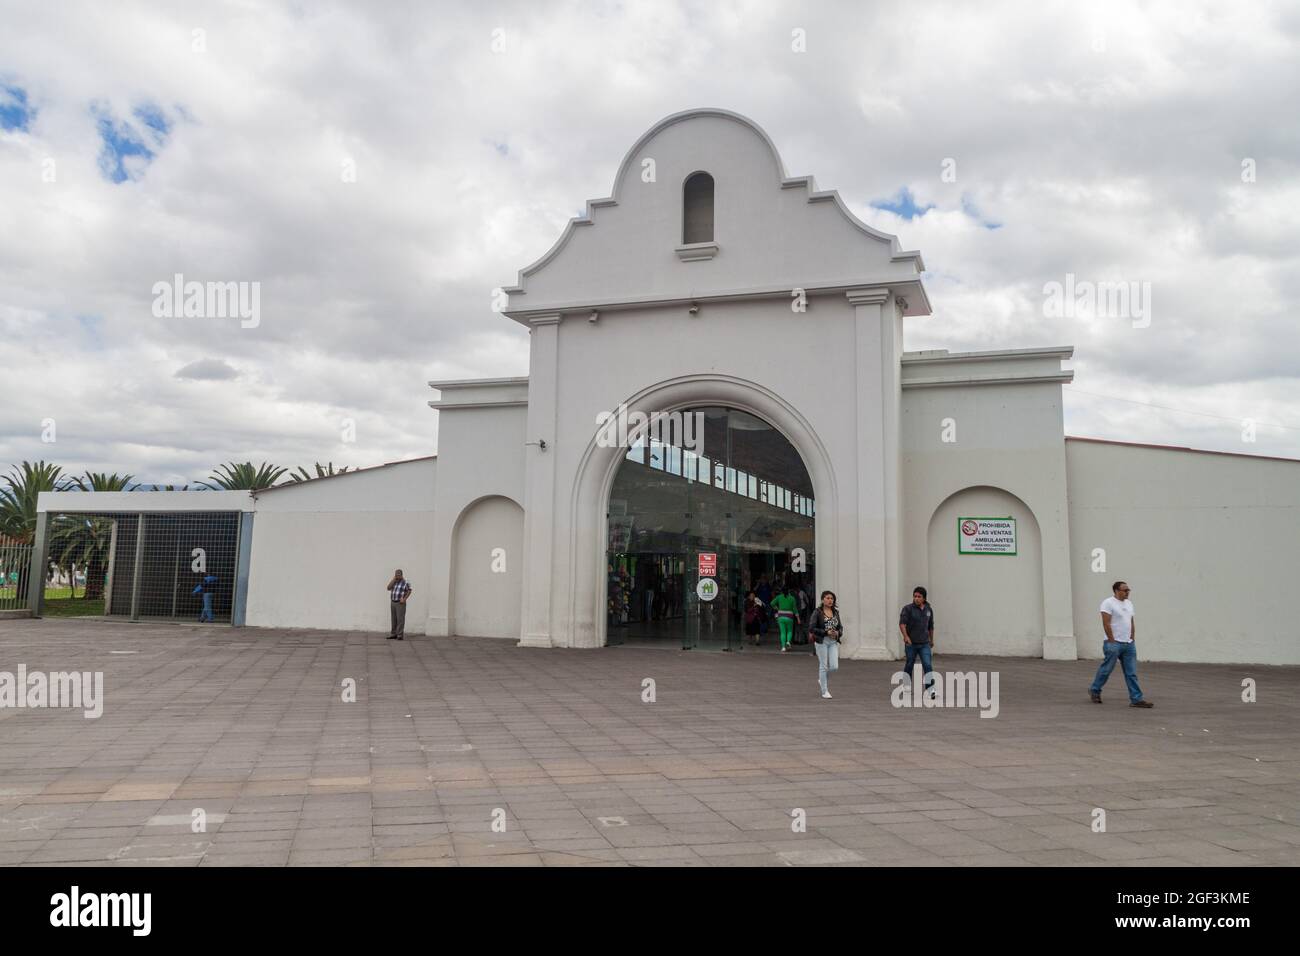 IBARRA, ECUADOR - JUNE 28, 2015: Bus station in Ibarra town (called White City), Ecuador Stock Photo